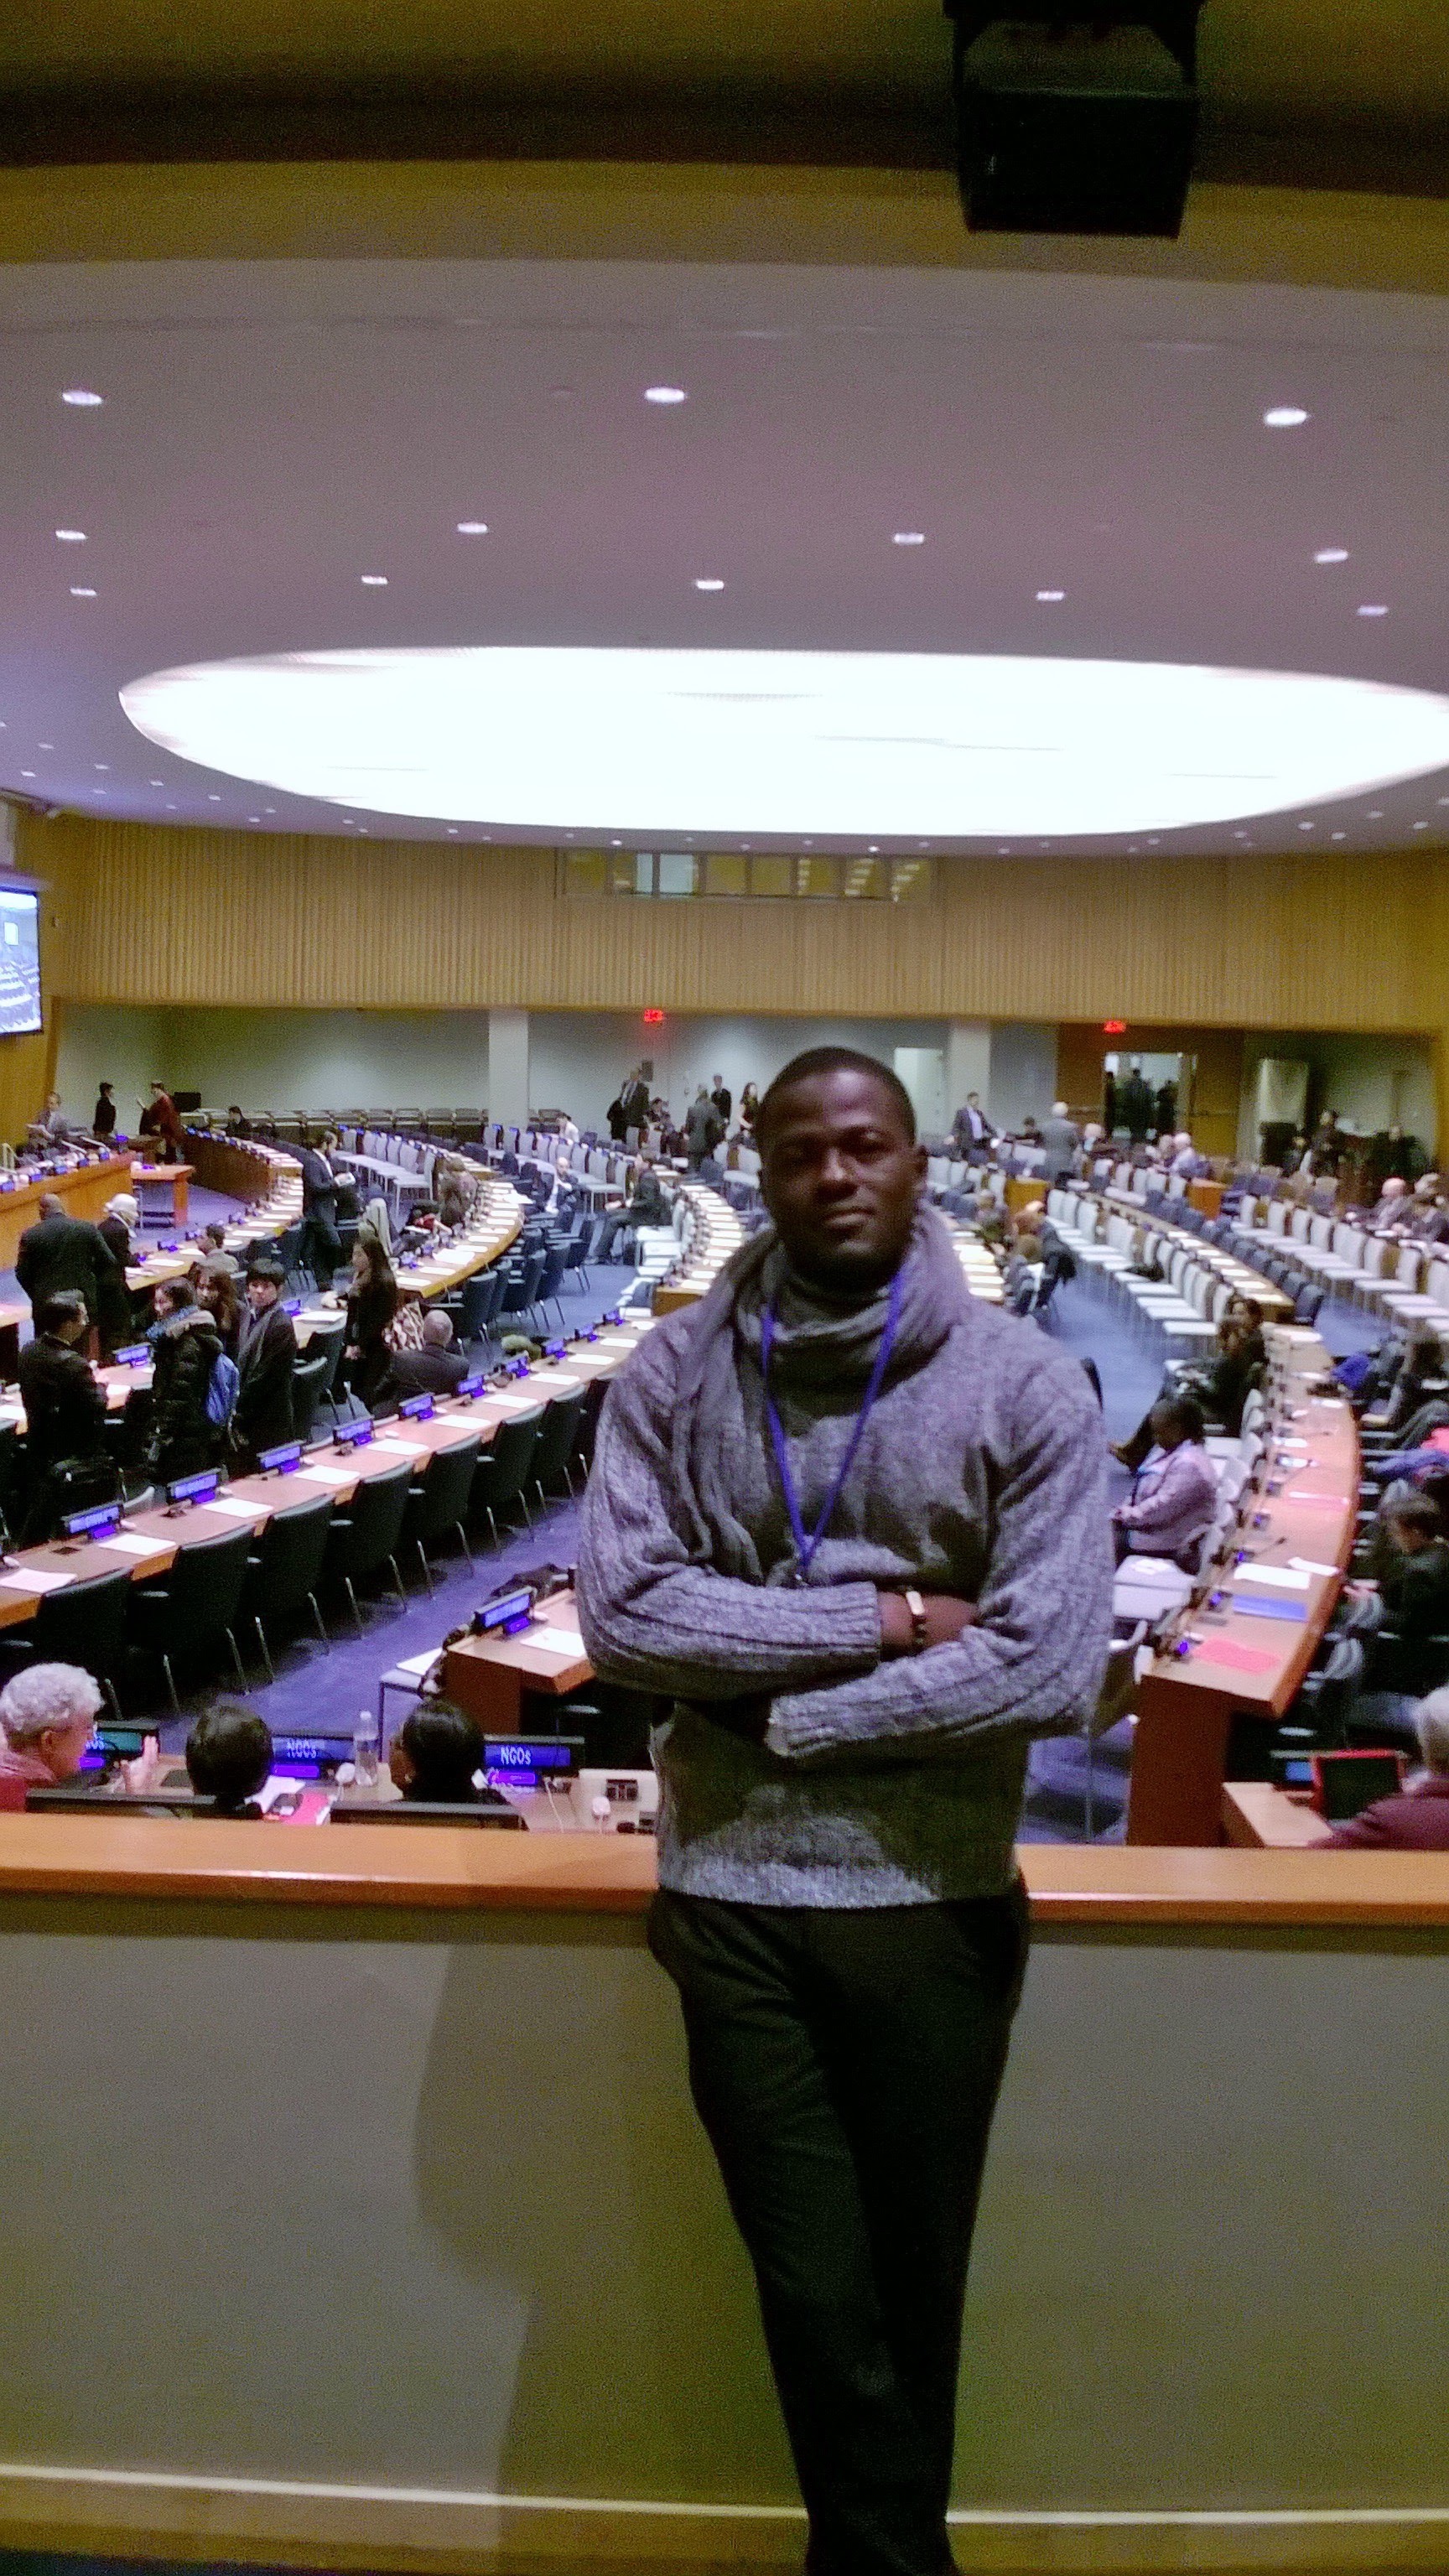 alex at the UN